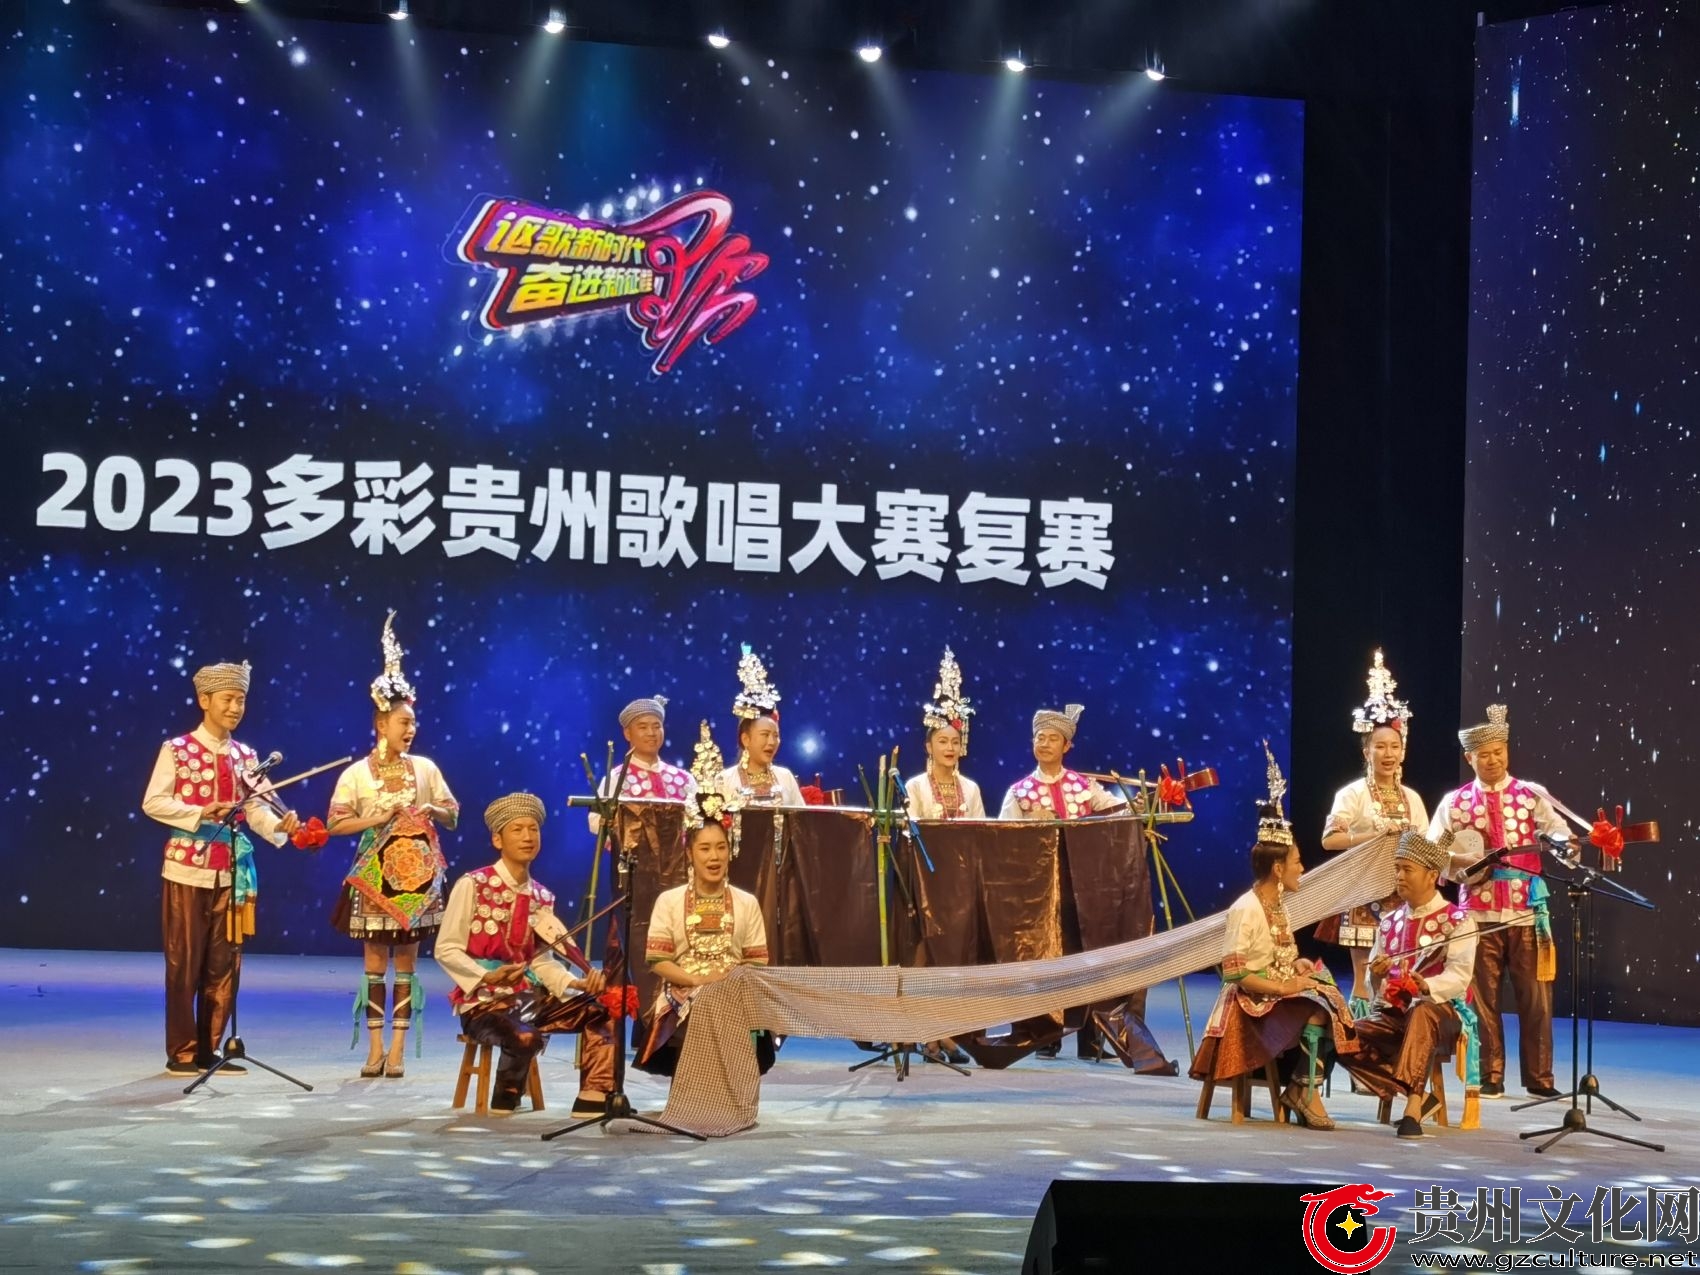 从江县侗歌队双双挺进贵州歌唱大赛决赛